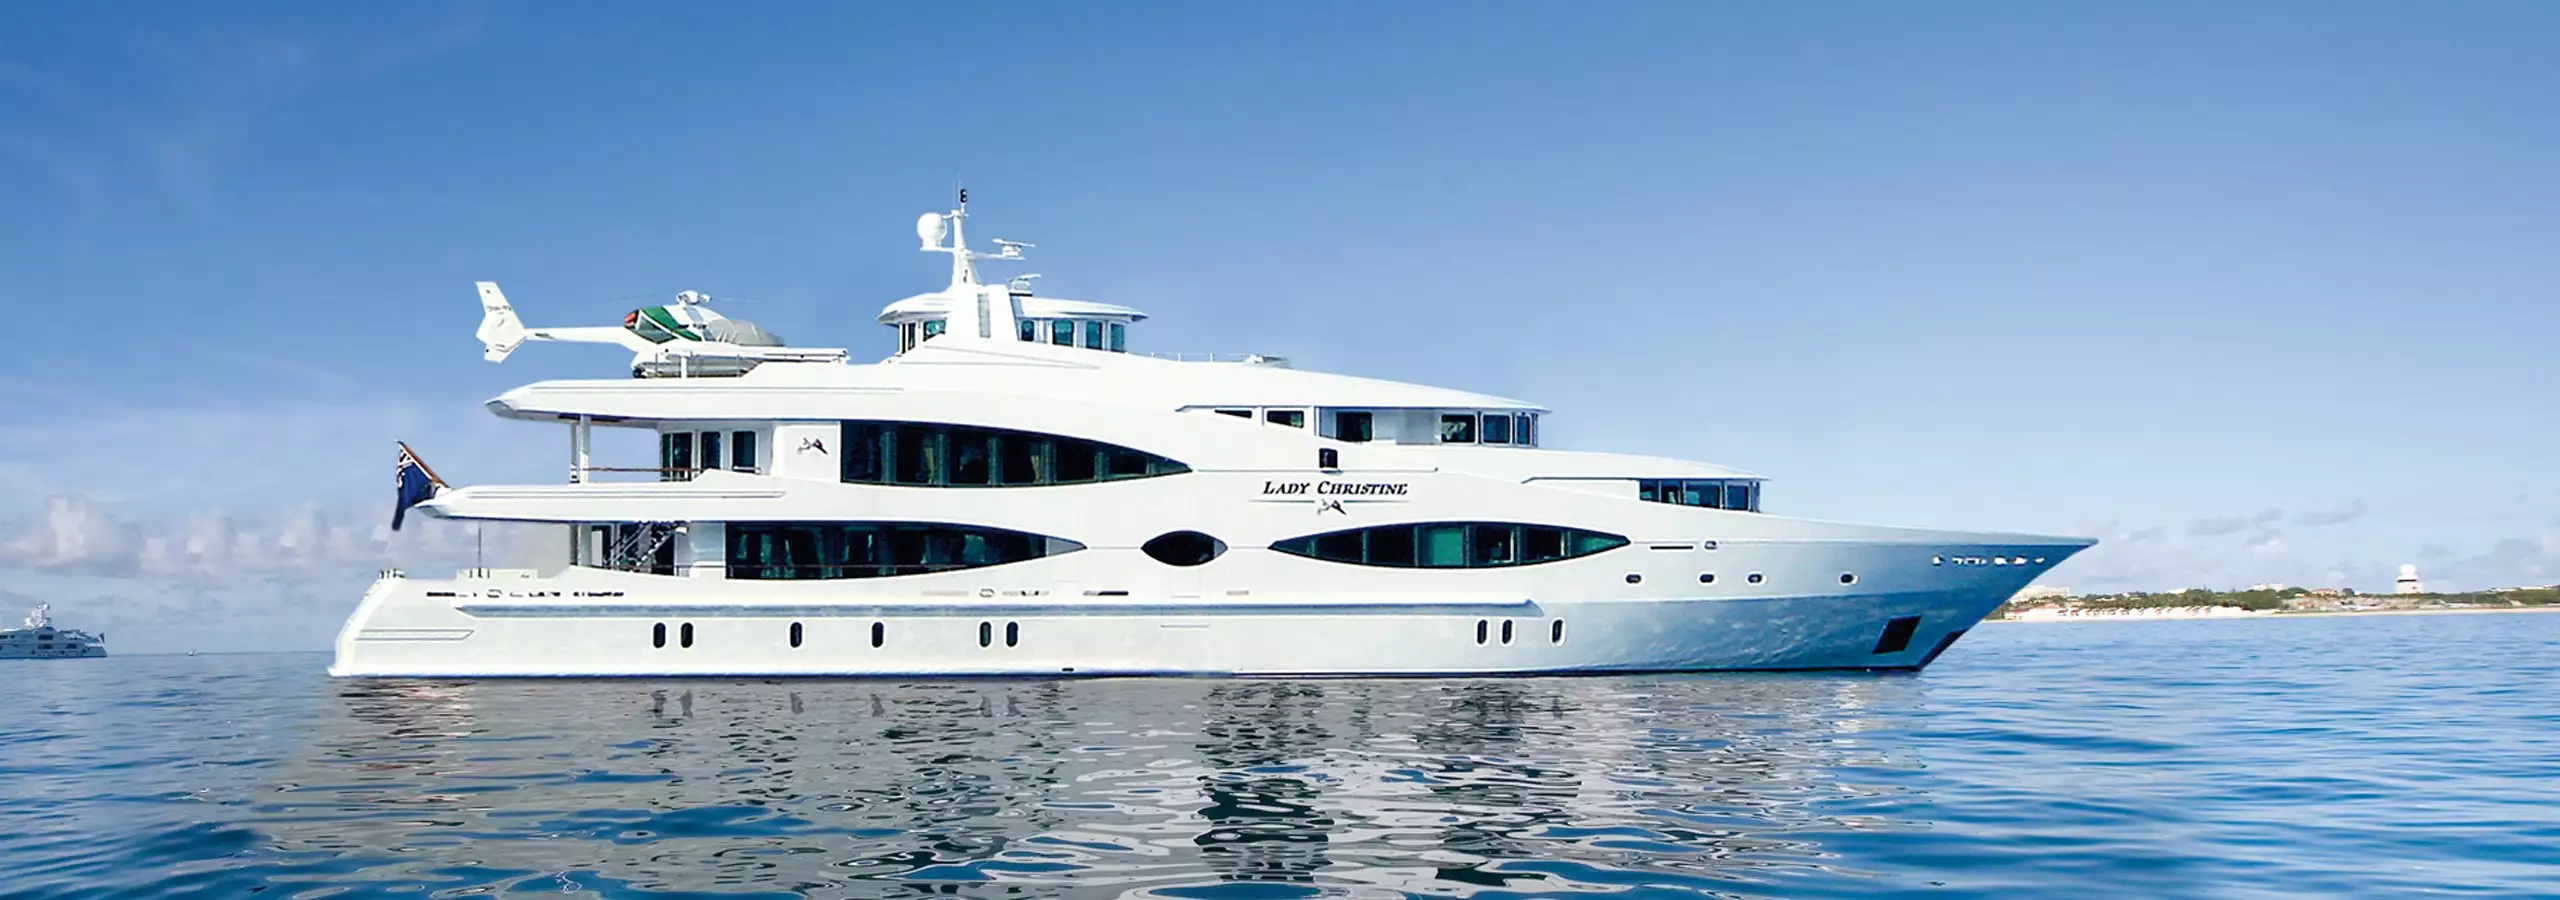 jacht Queen Mavia – 56m – Oceanco 